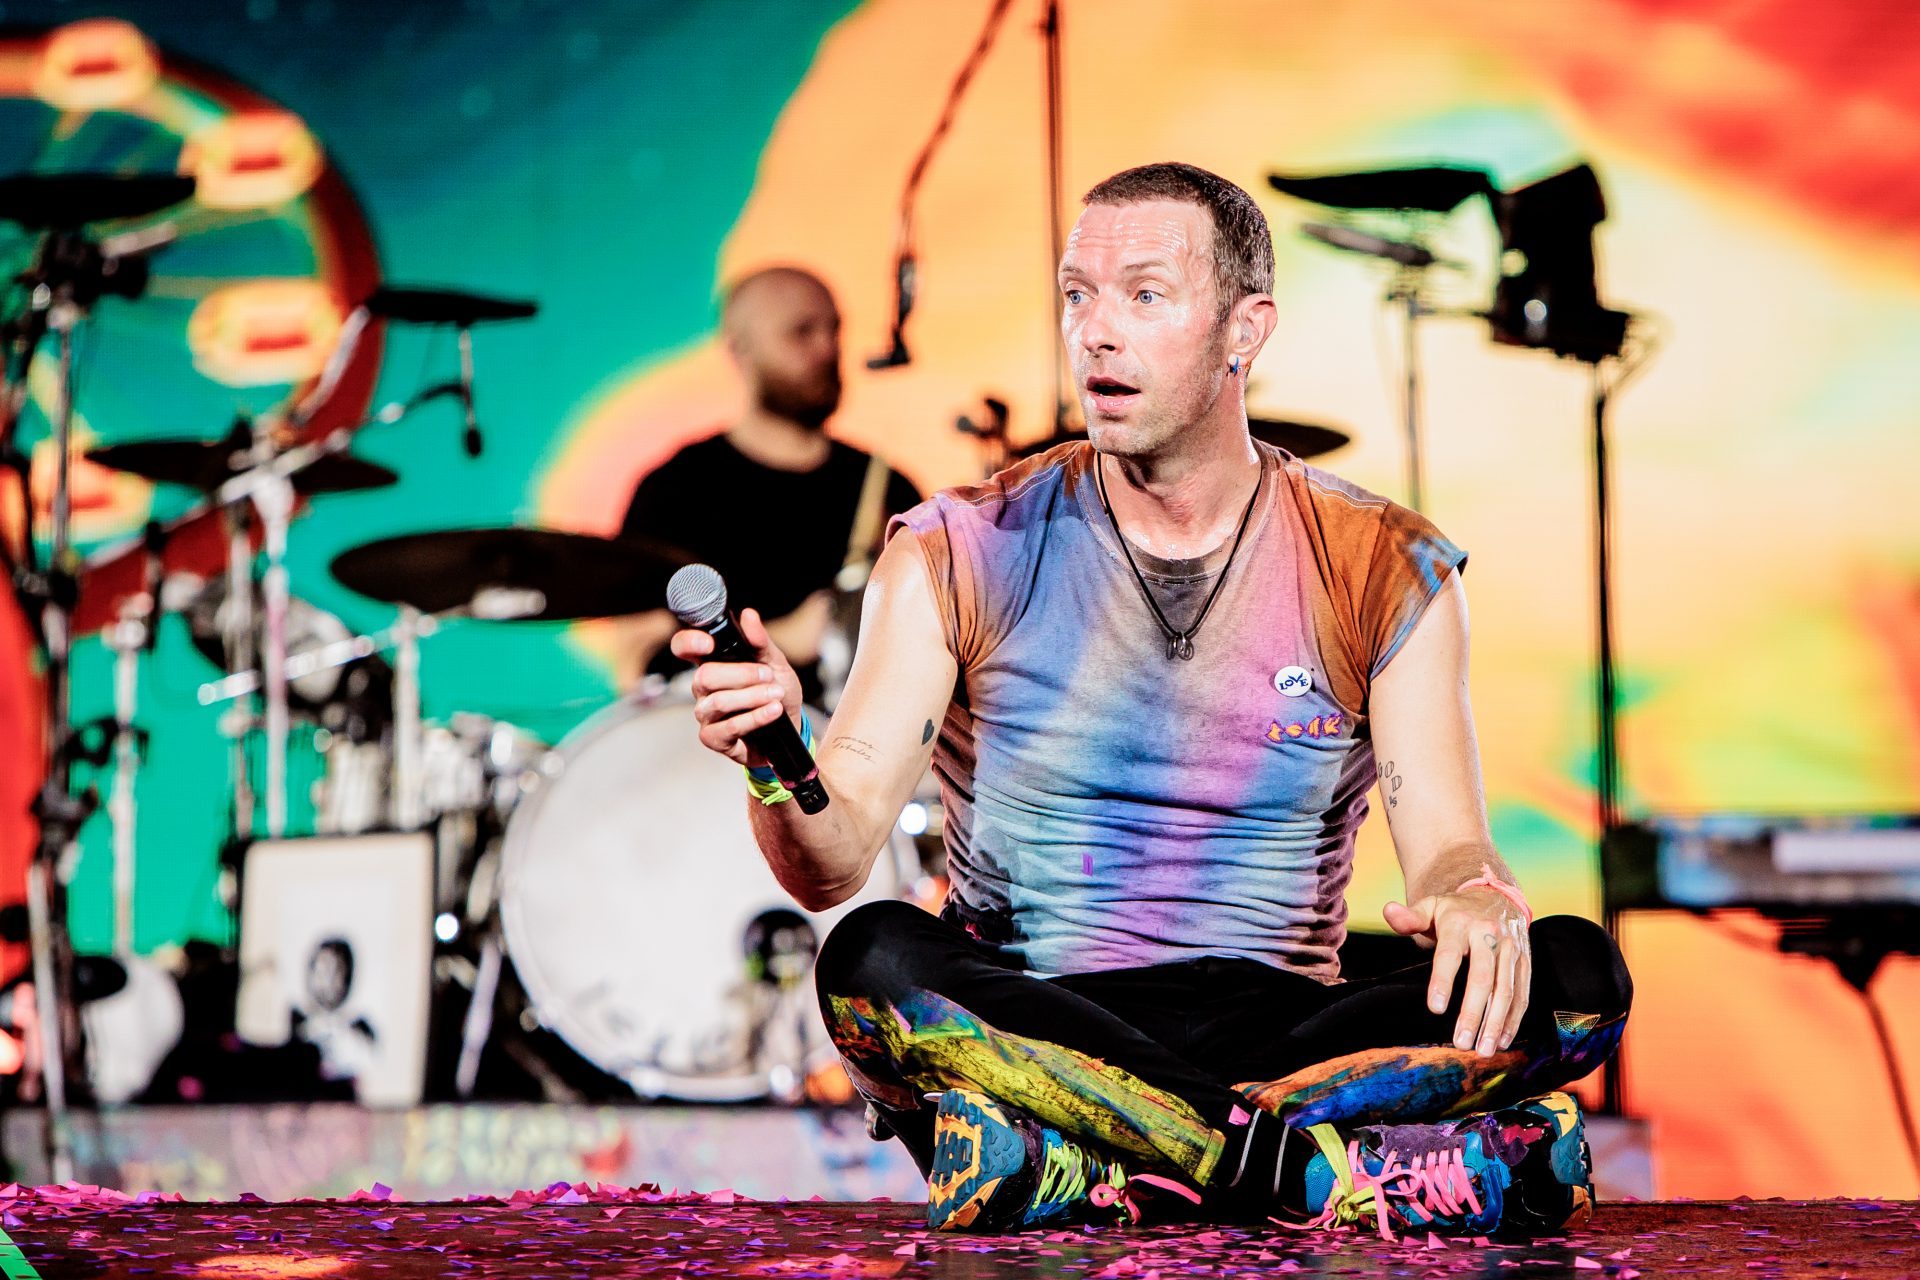 Pourquoi tout le monde parle-t-il des baskets de Chris Martin, le chanteur de Coldplay ?